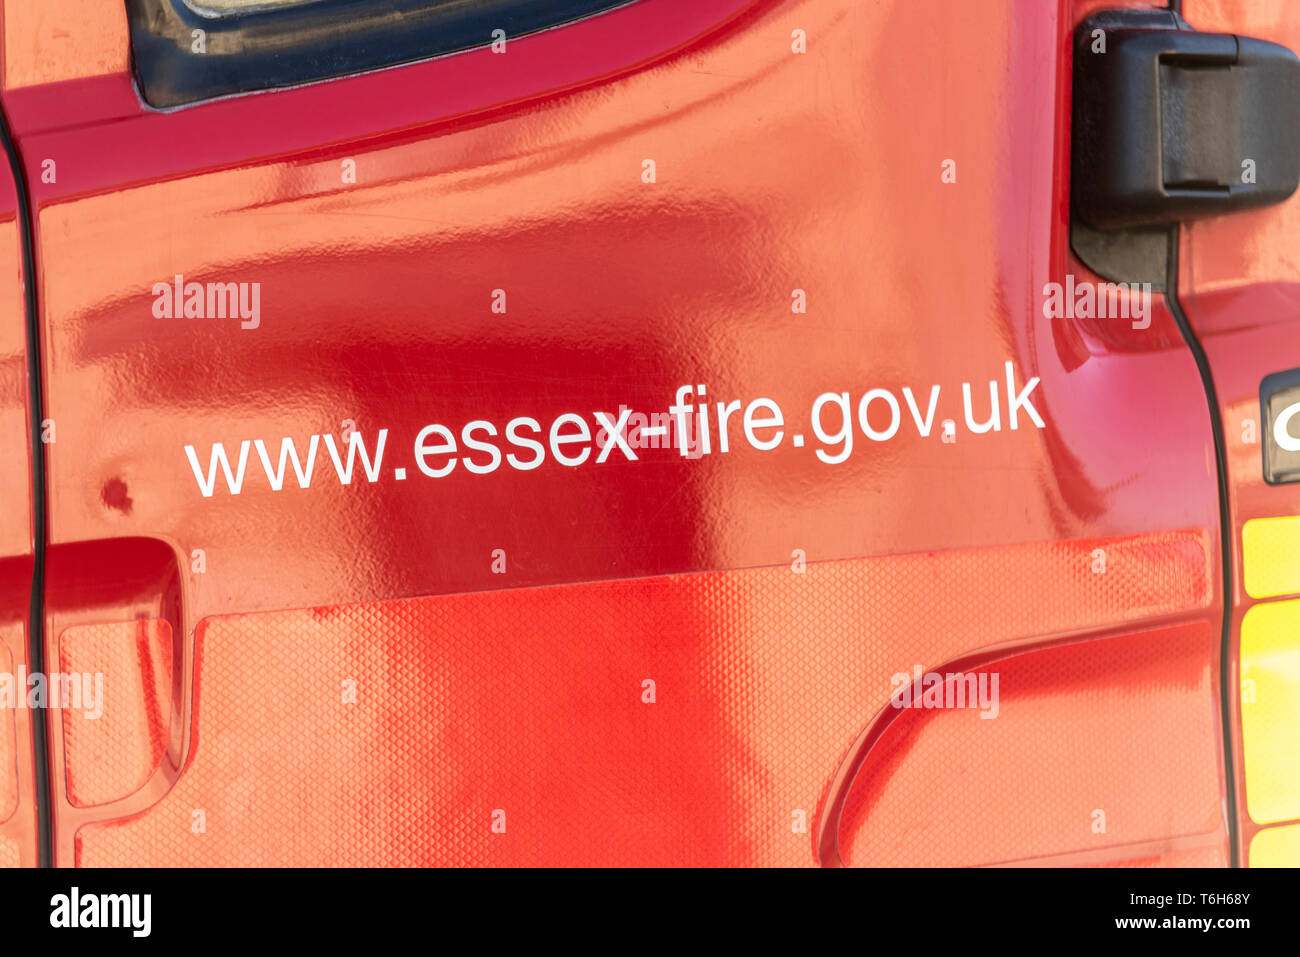 Essex Feuerwehr Fire Engine Tür mit Web-Adresse. Red Fire Gerät mit Internet link Www.essex-fire.gov.uk Stockfoto